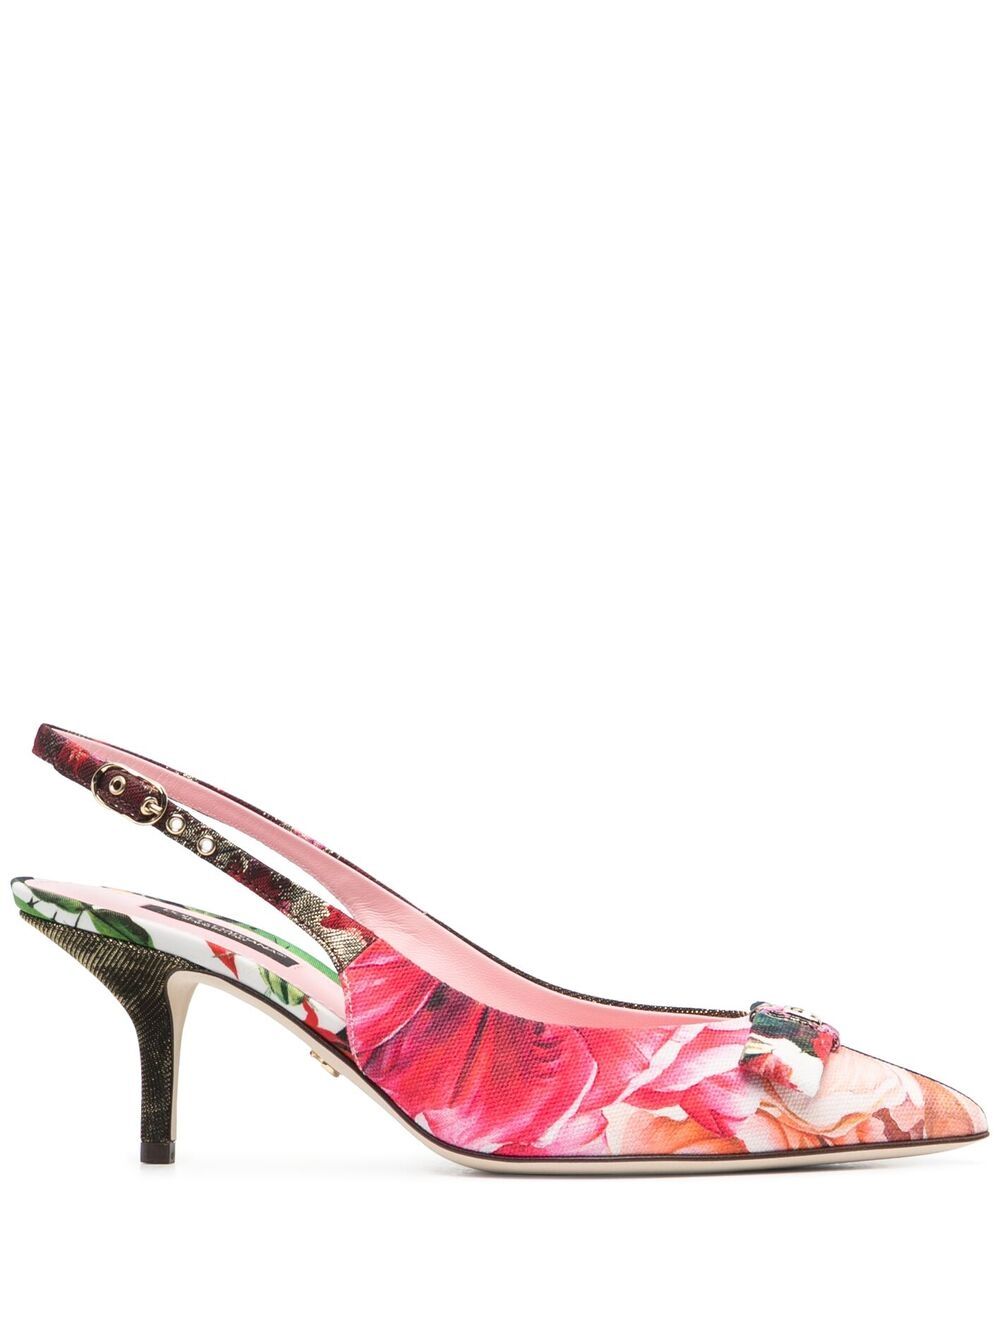 Slingback Pumps дамски обувки Dolce & Gabbana 846473770_35